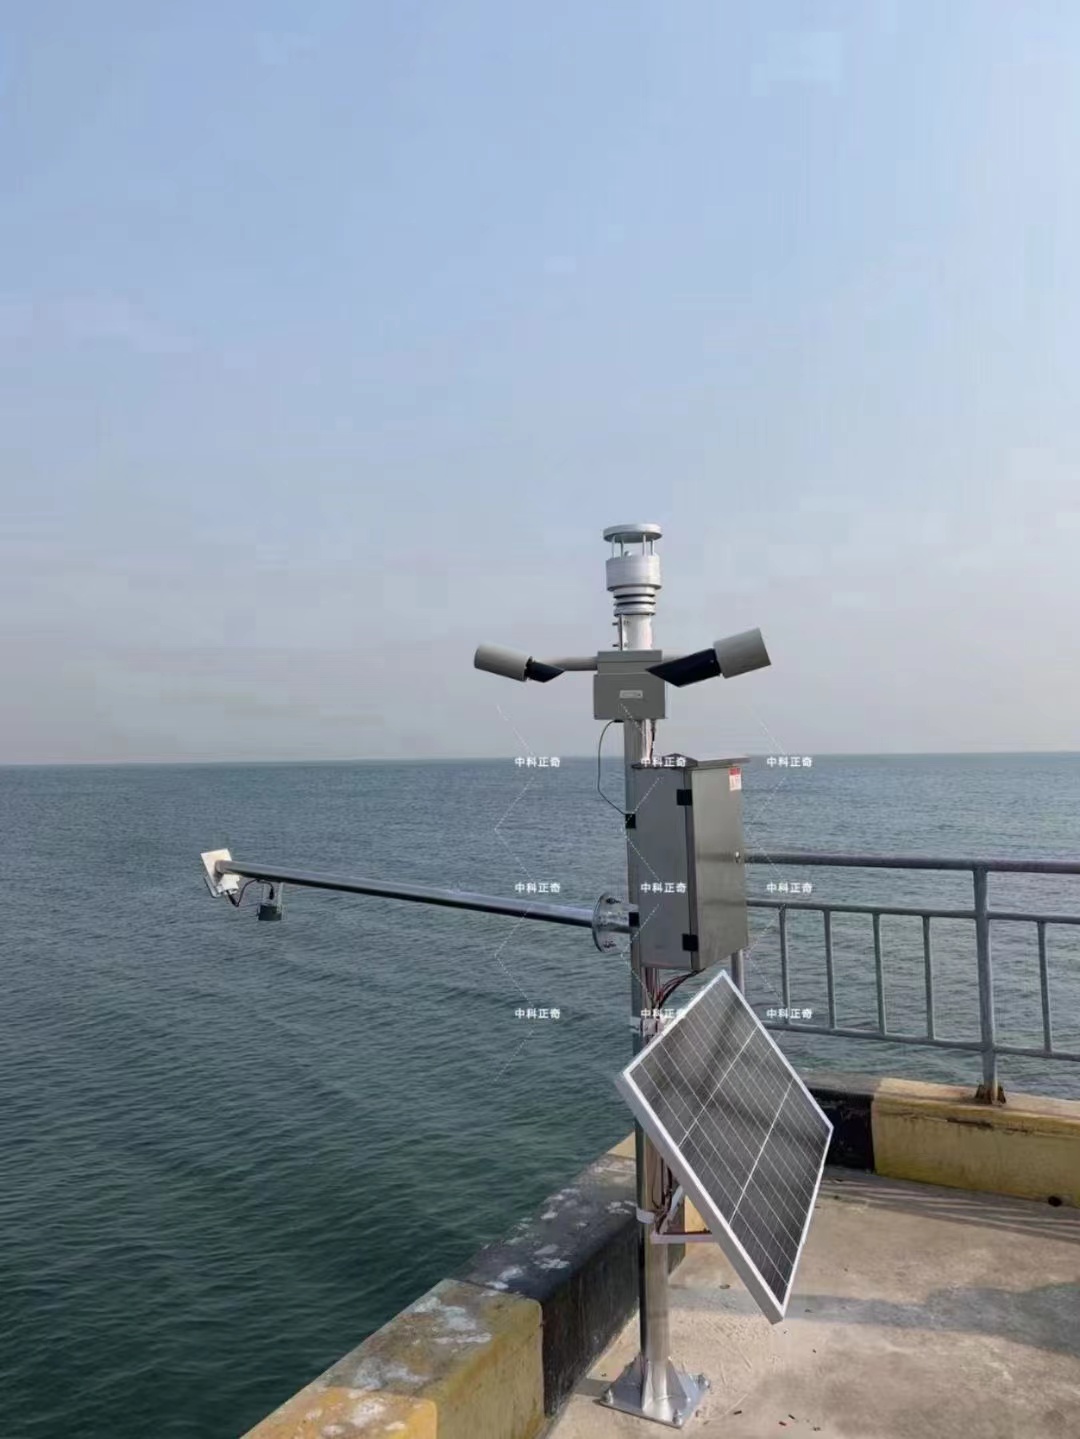 唐山某船厂-超声波气象五参数+水质在线监测系统